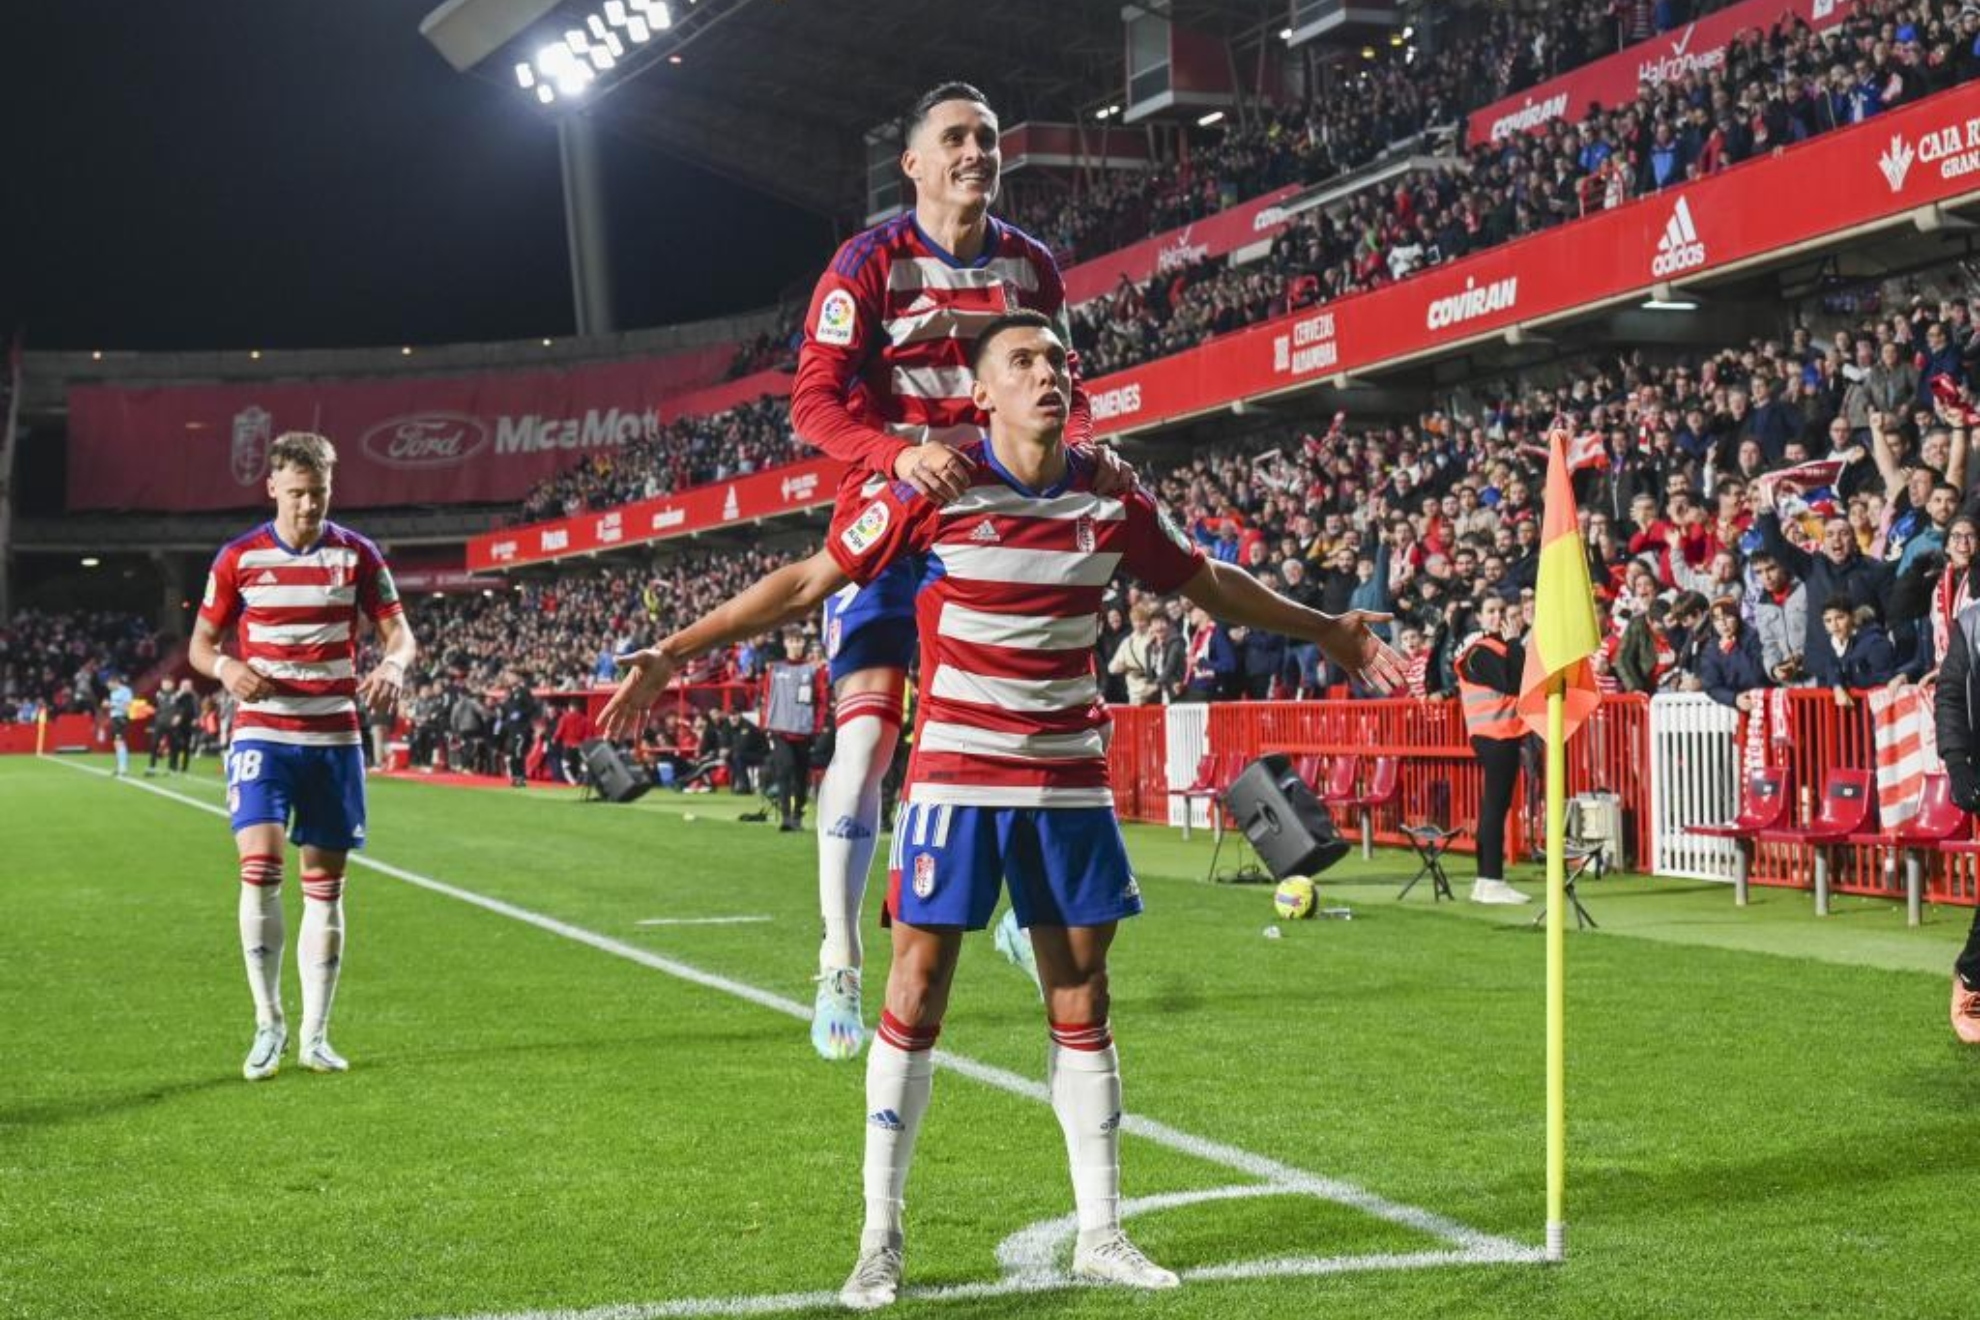 Uzuni celebra el gol que marcó al Burgos, mientras que Callejón salto sobre él y Petrovic de fondo.